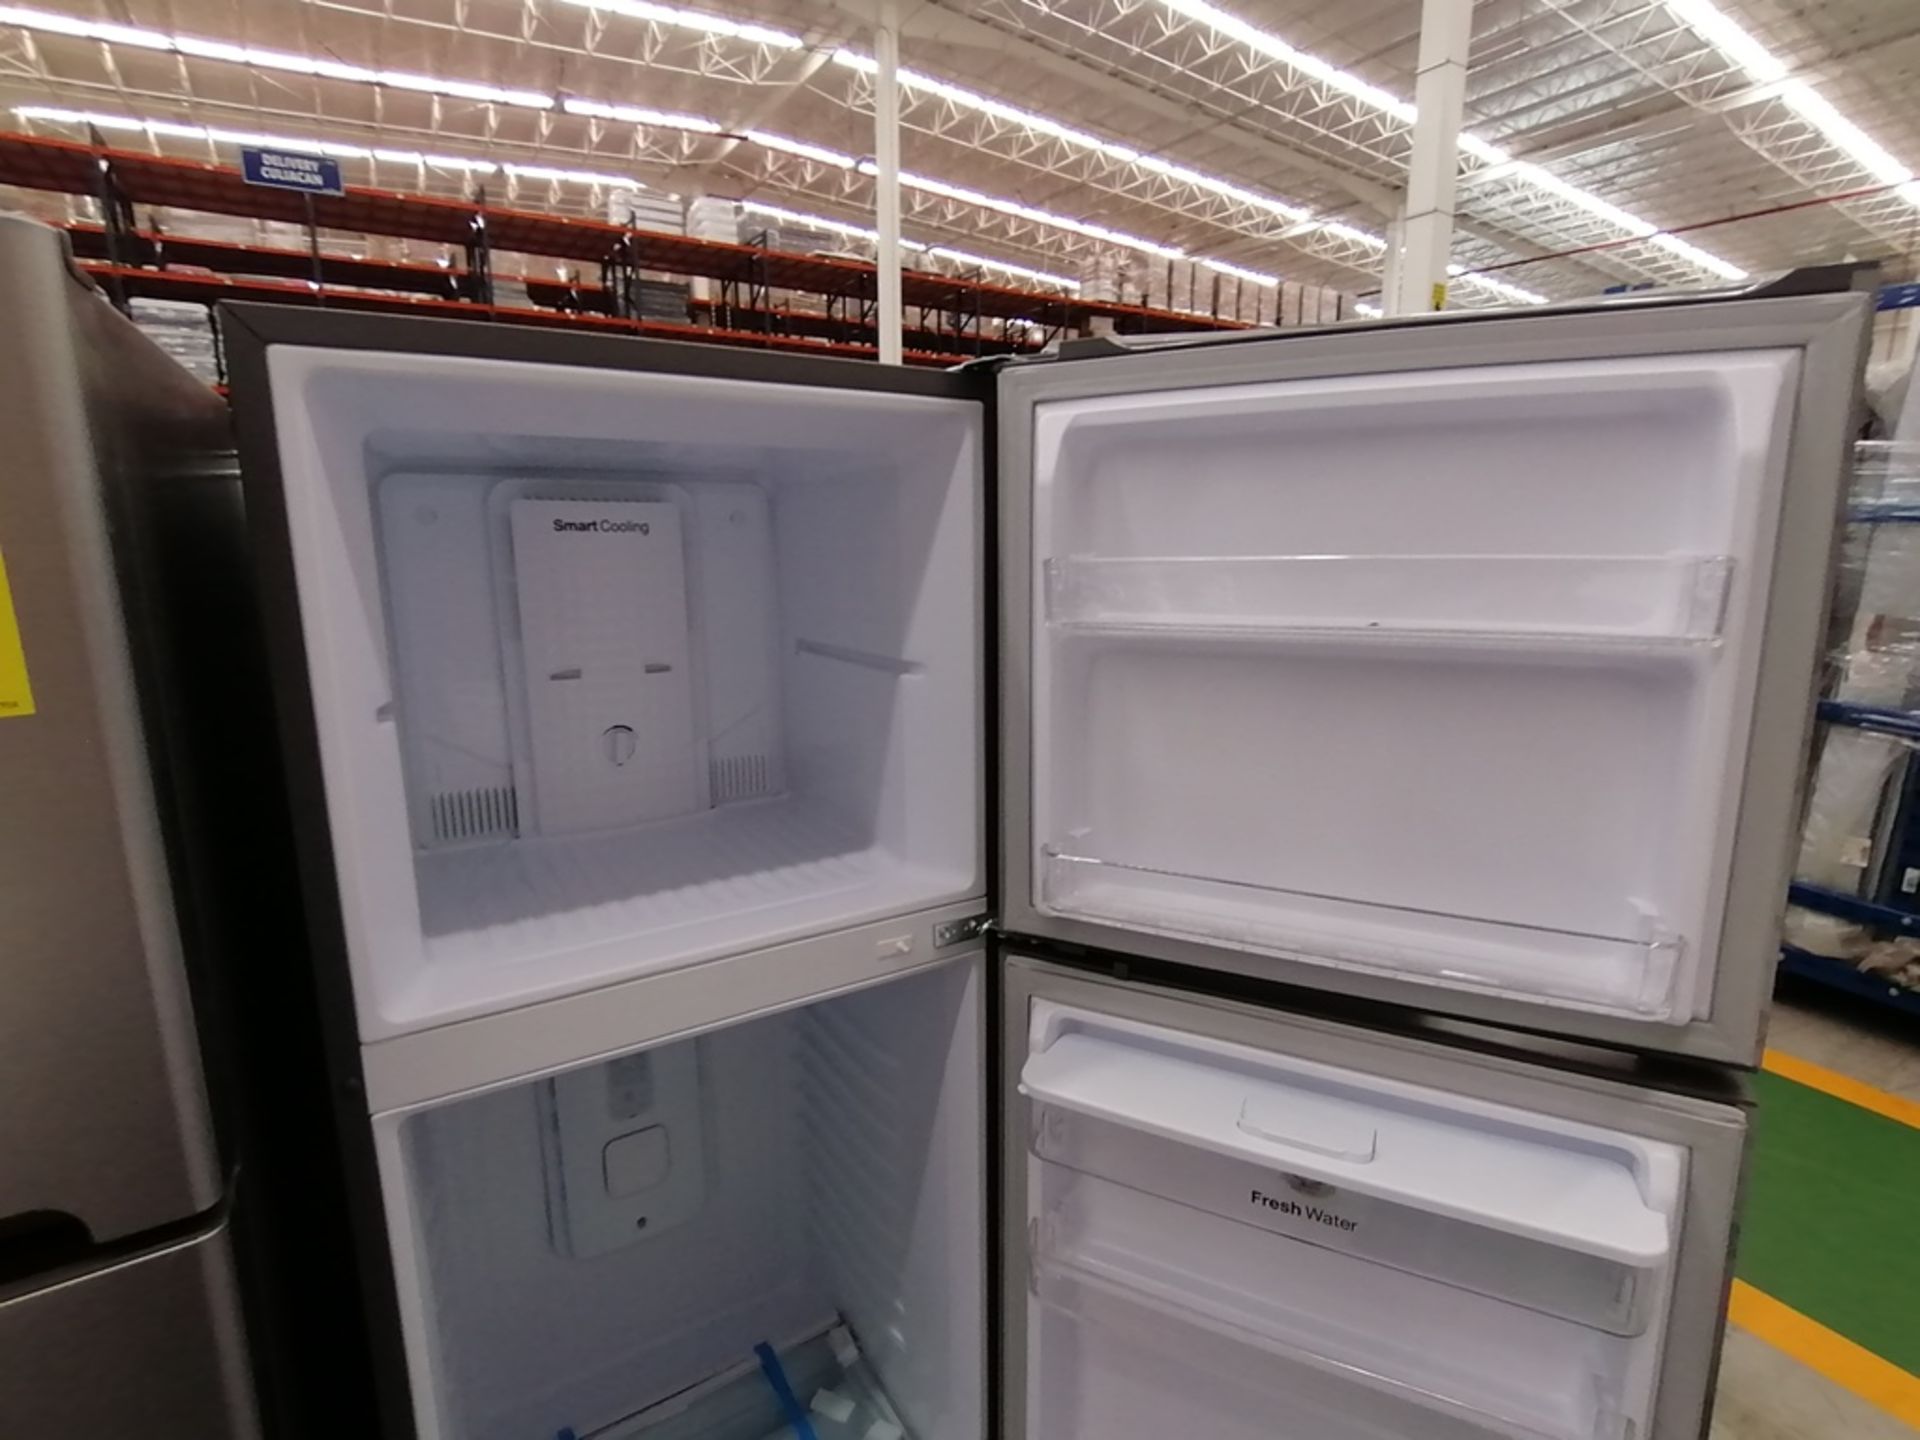 Lote de 2 refrigeradores incluye: 1 Refrigerador con dispensador de agua, Marca Winia, Modelo DFR40 - Image 13 of 15